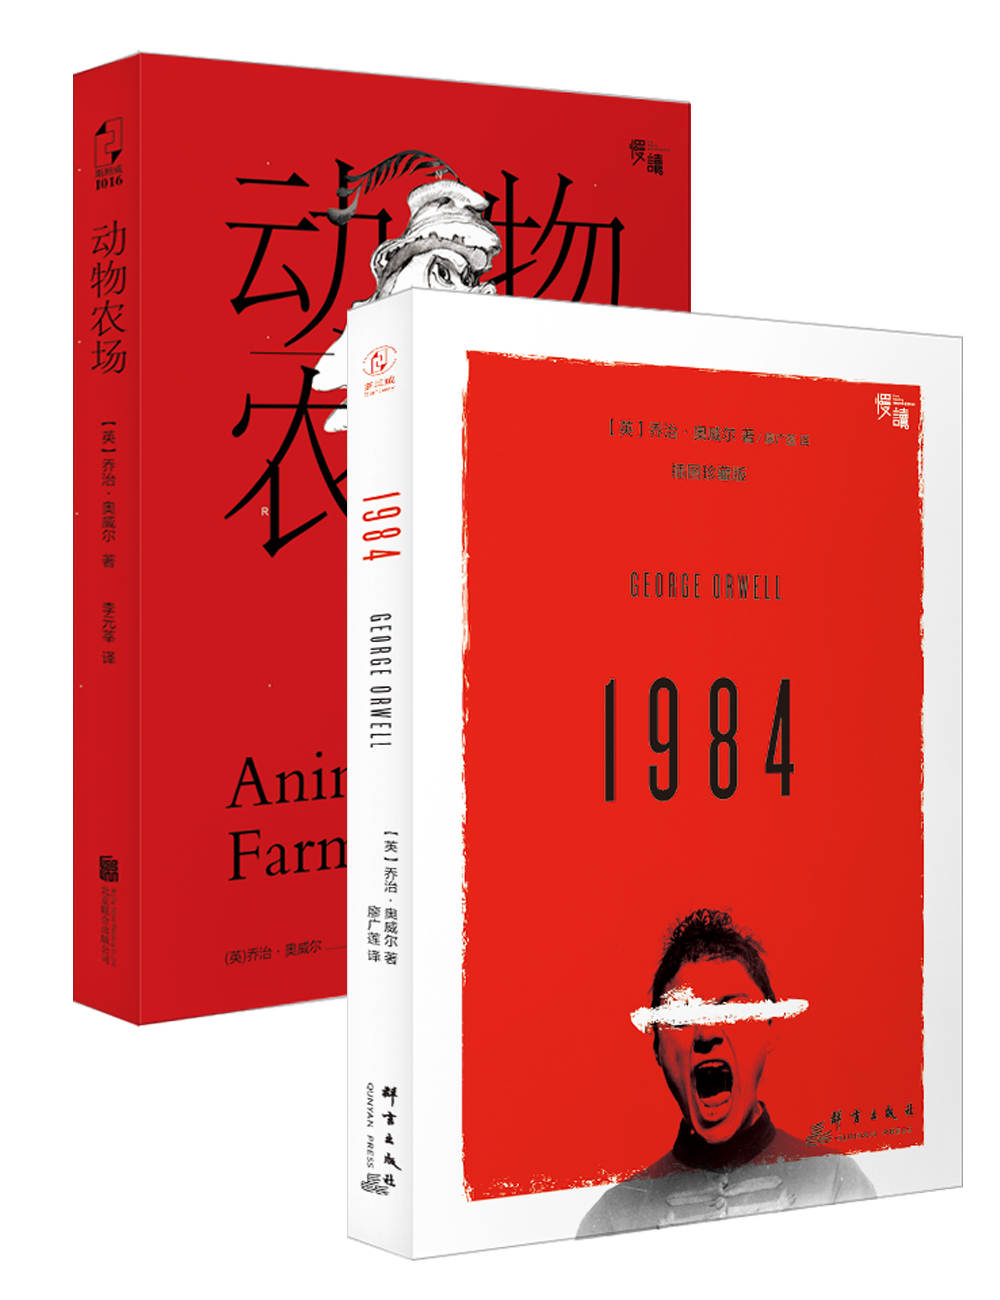 慢读经典系列·奥威尔代表作:动物农场+1984(套装共2册) ("慢读"系列)